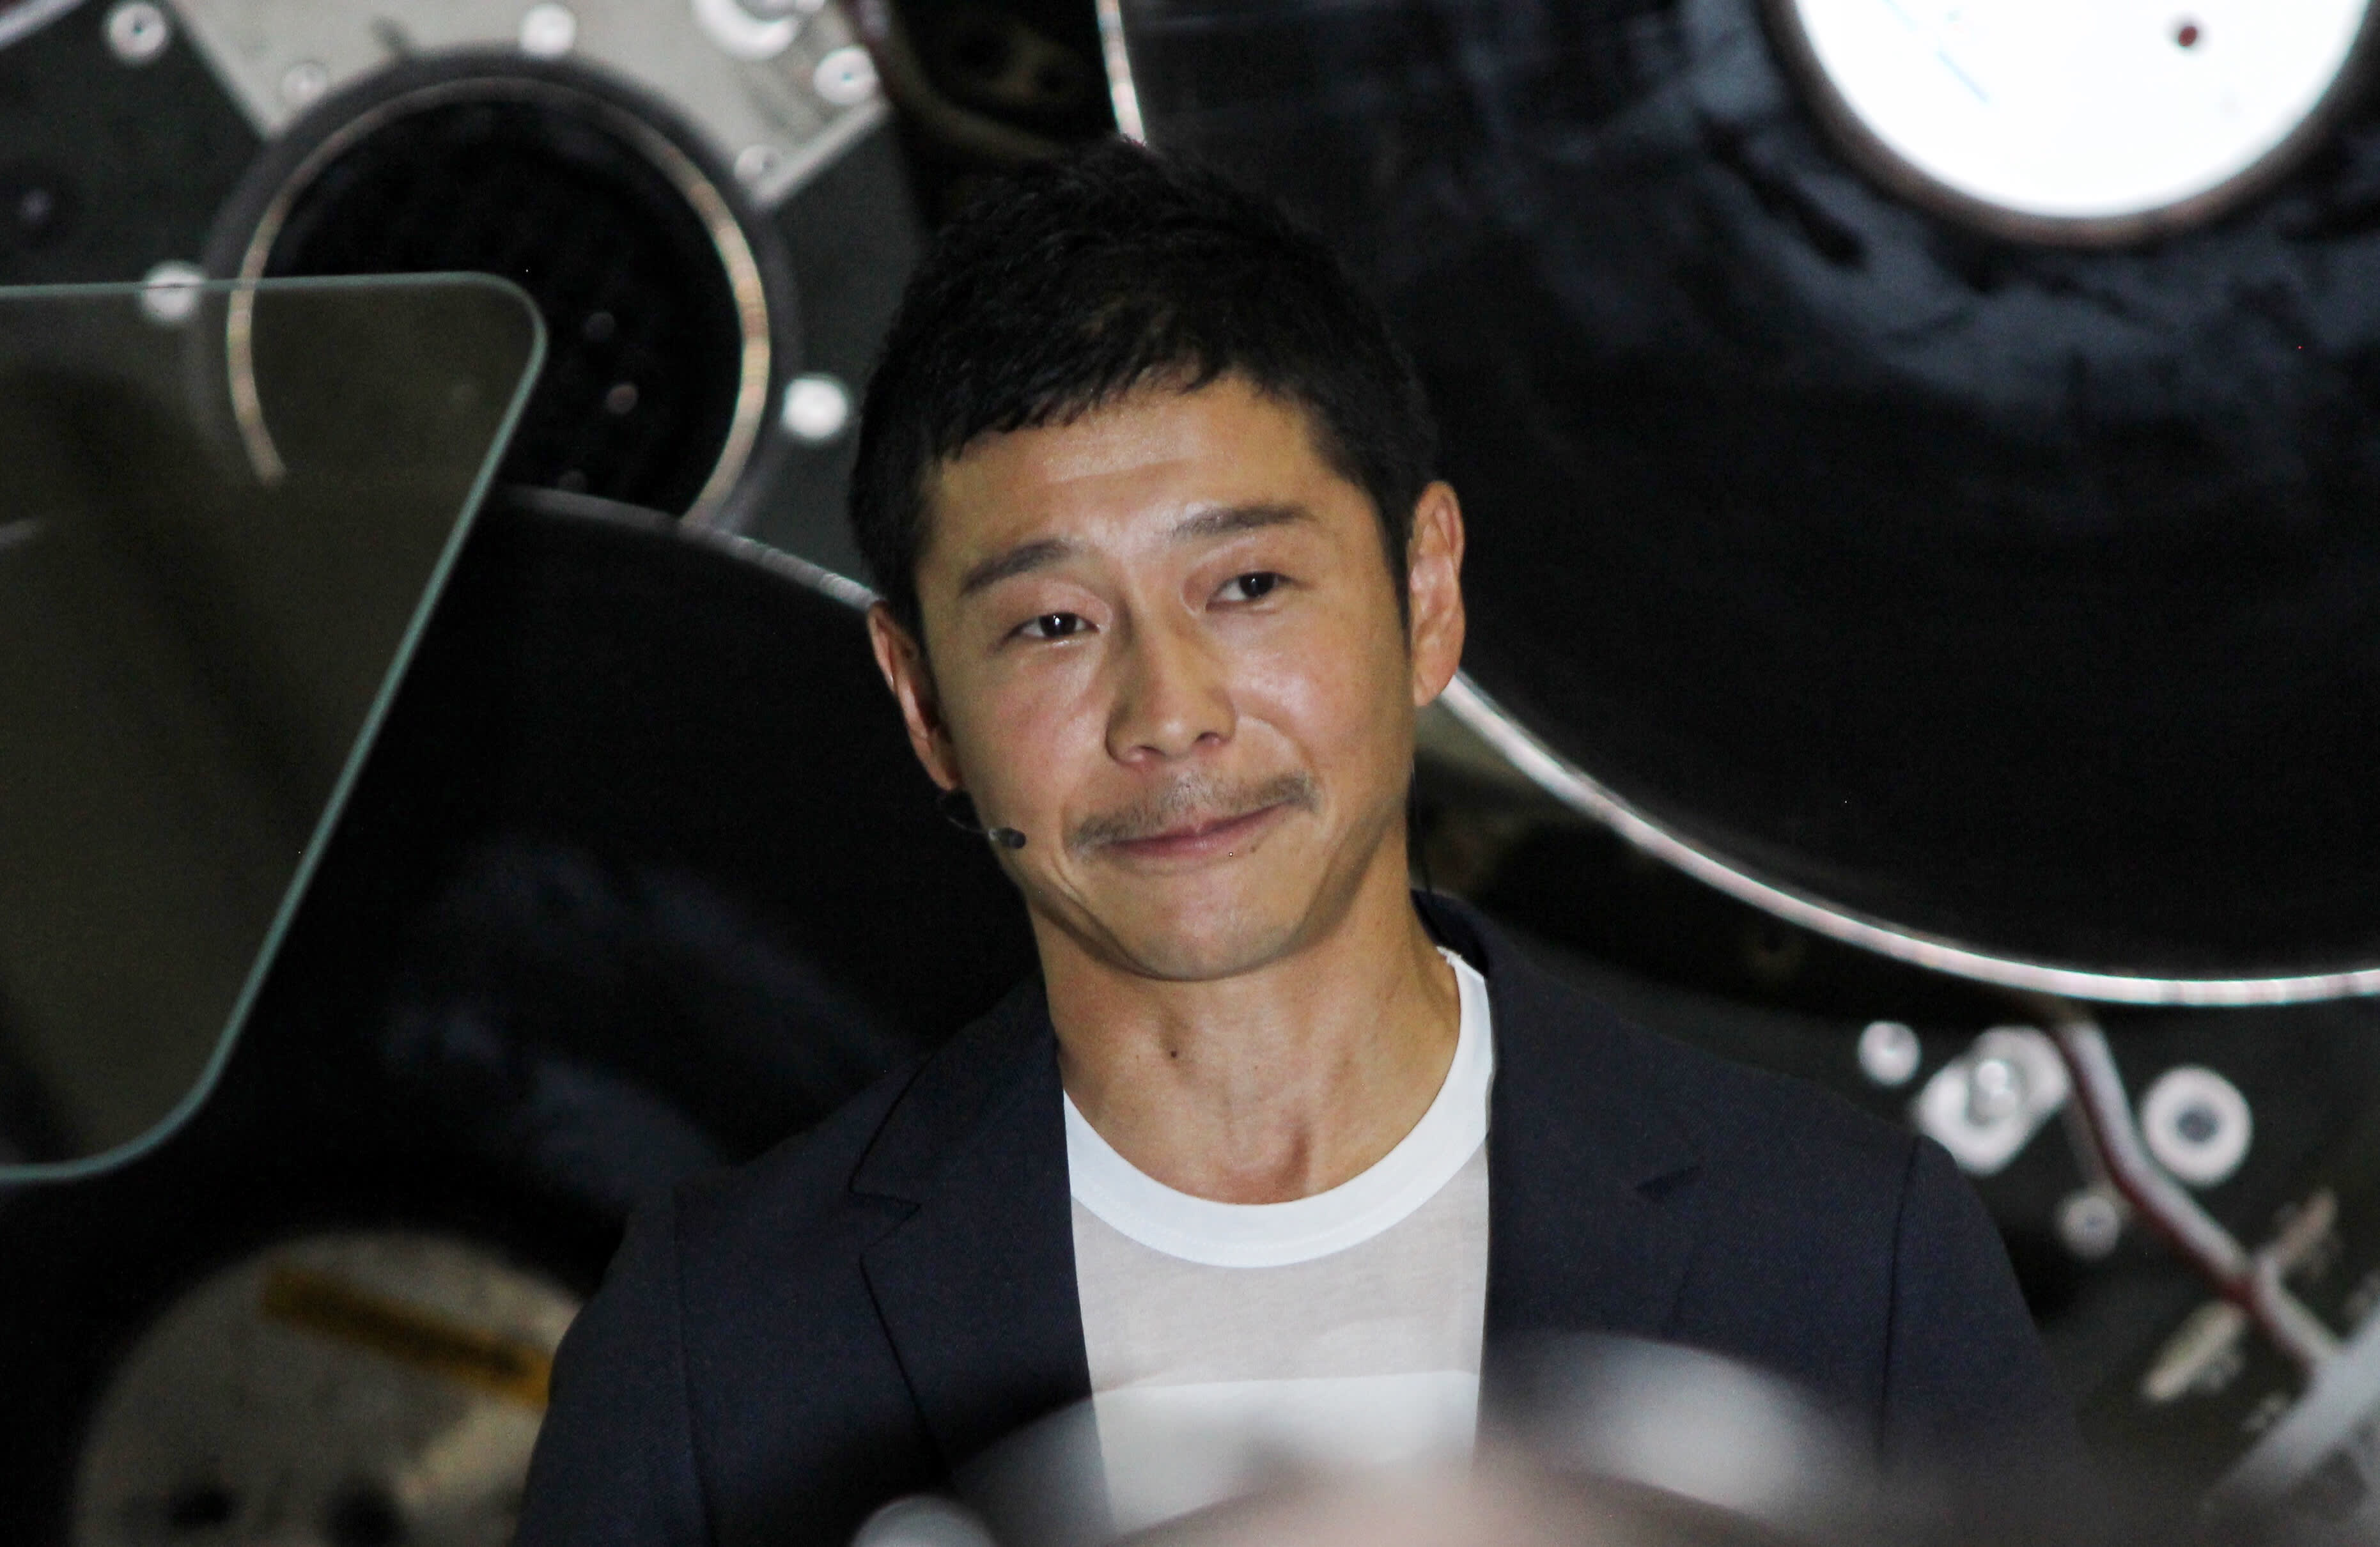 Yusaku Maezawa opens public places on SpaceX Starship flight